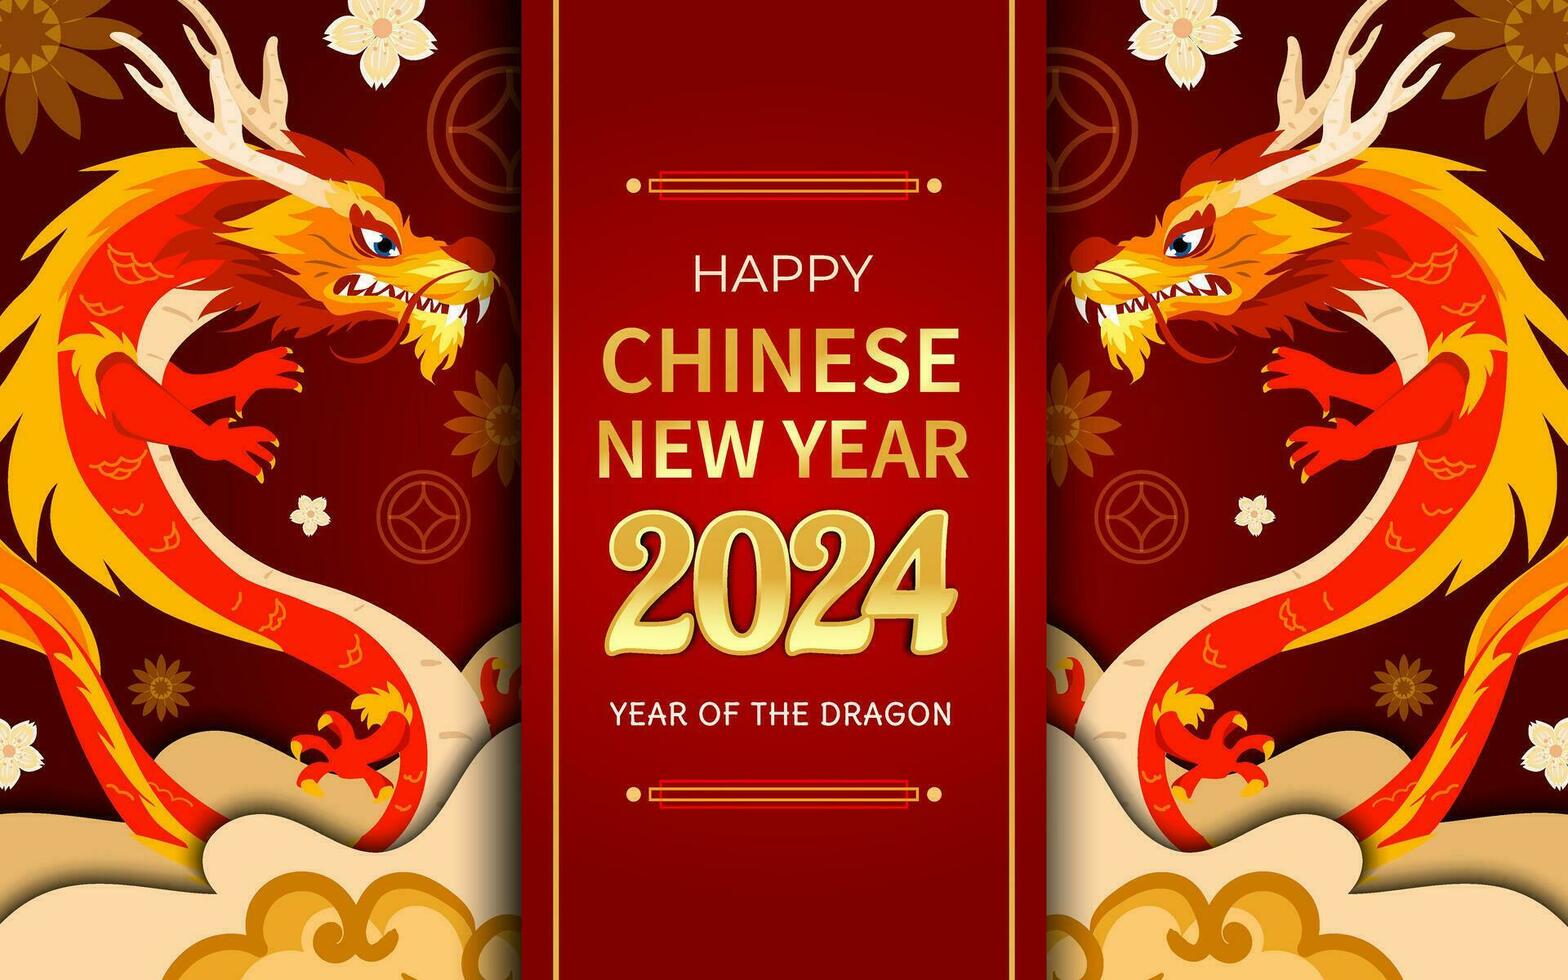 Chinese nieuw jaar van de draak 2024 vector